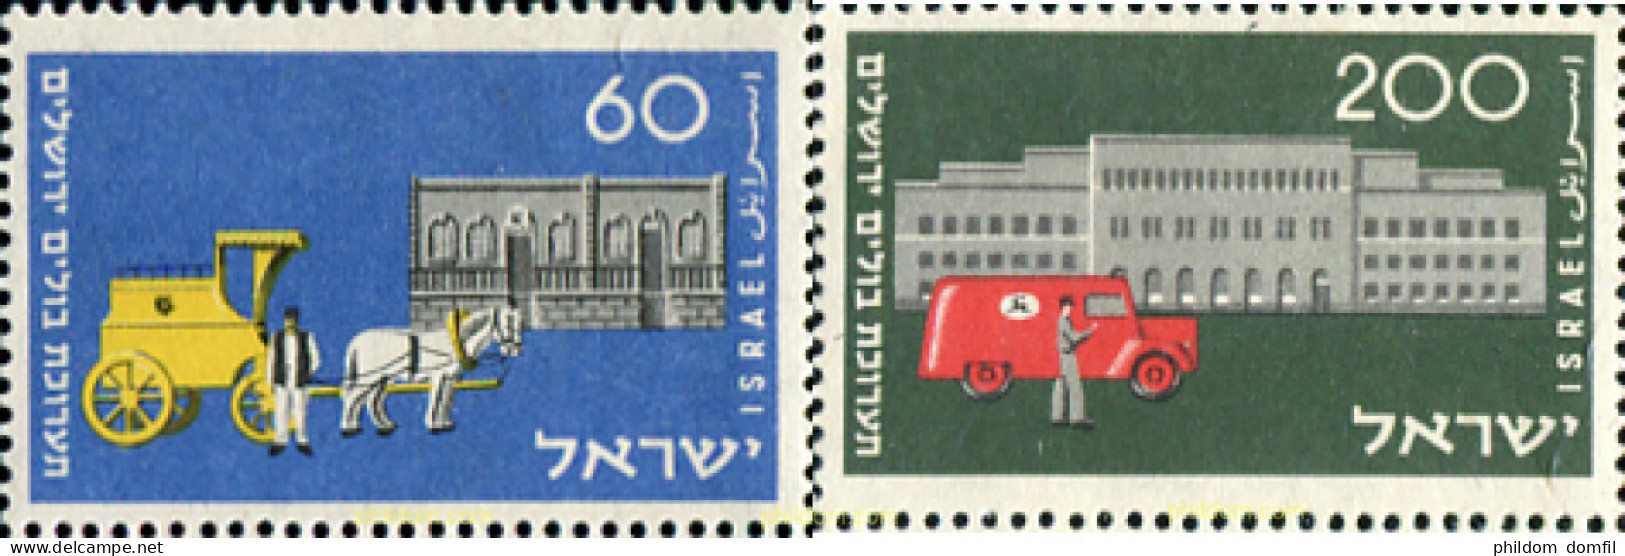 327688 HINGED ISRAEL 1954 CENTENARIO DEL SERVICIO POSTAL - Ungebraucht (ohne Tabs)